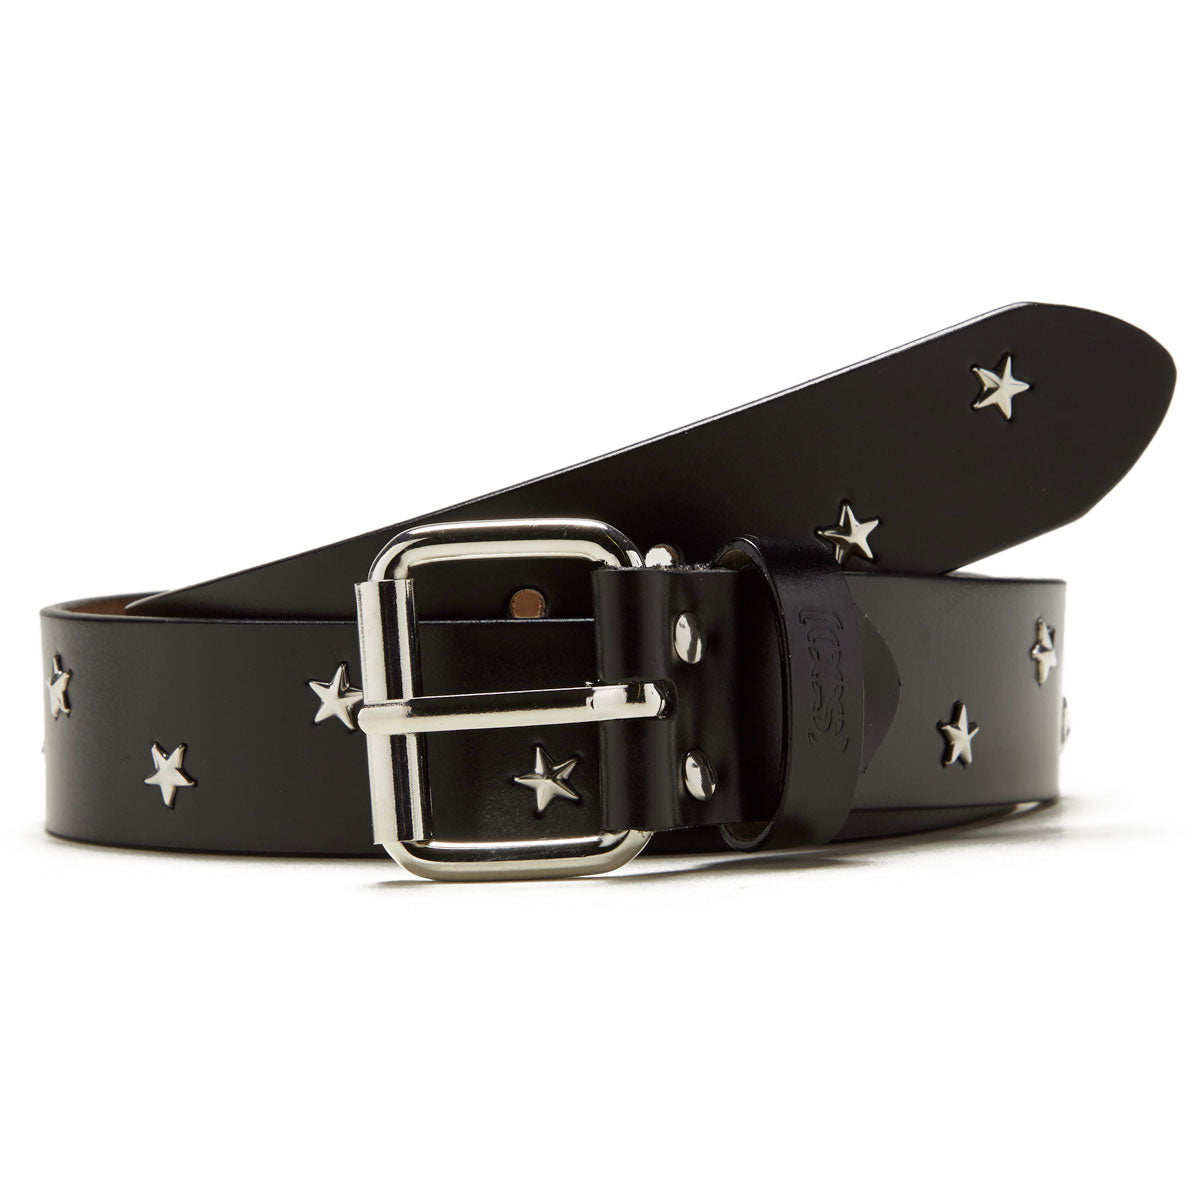 CCS Star Studded Leather Belt - Black image 1